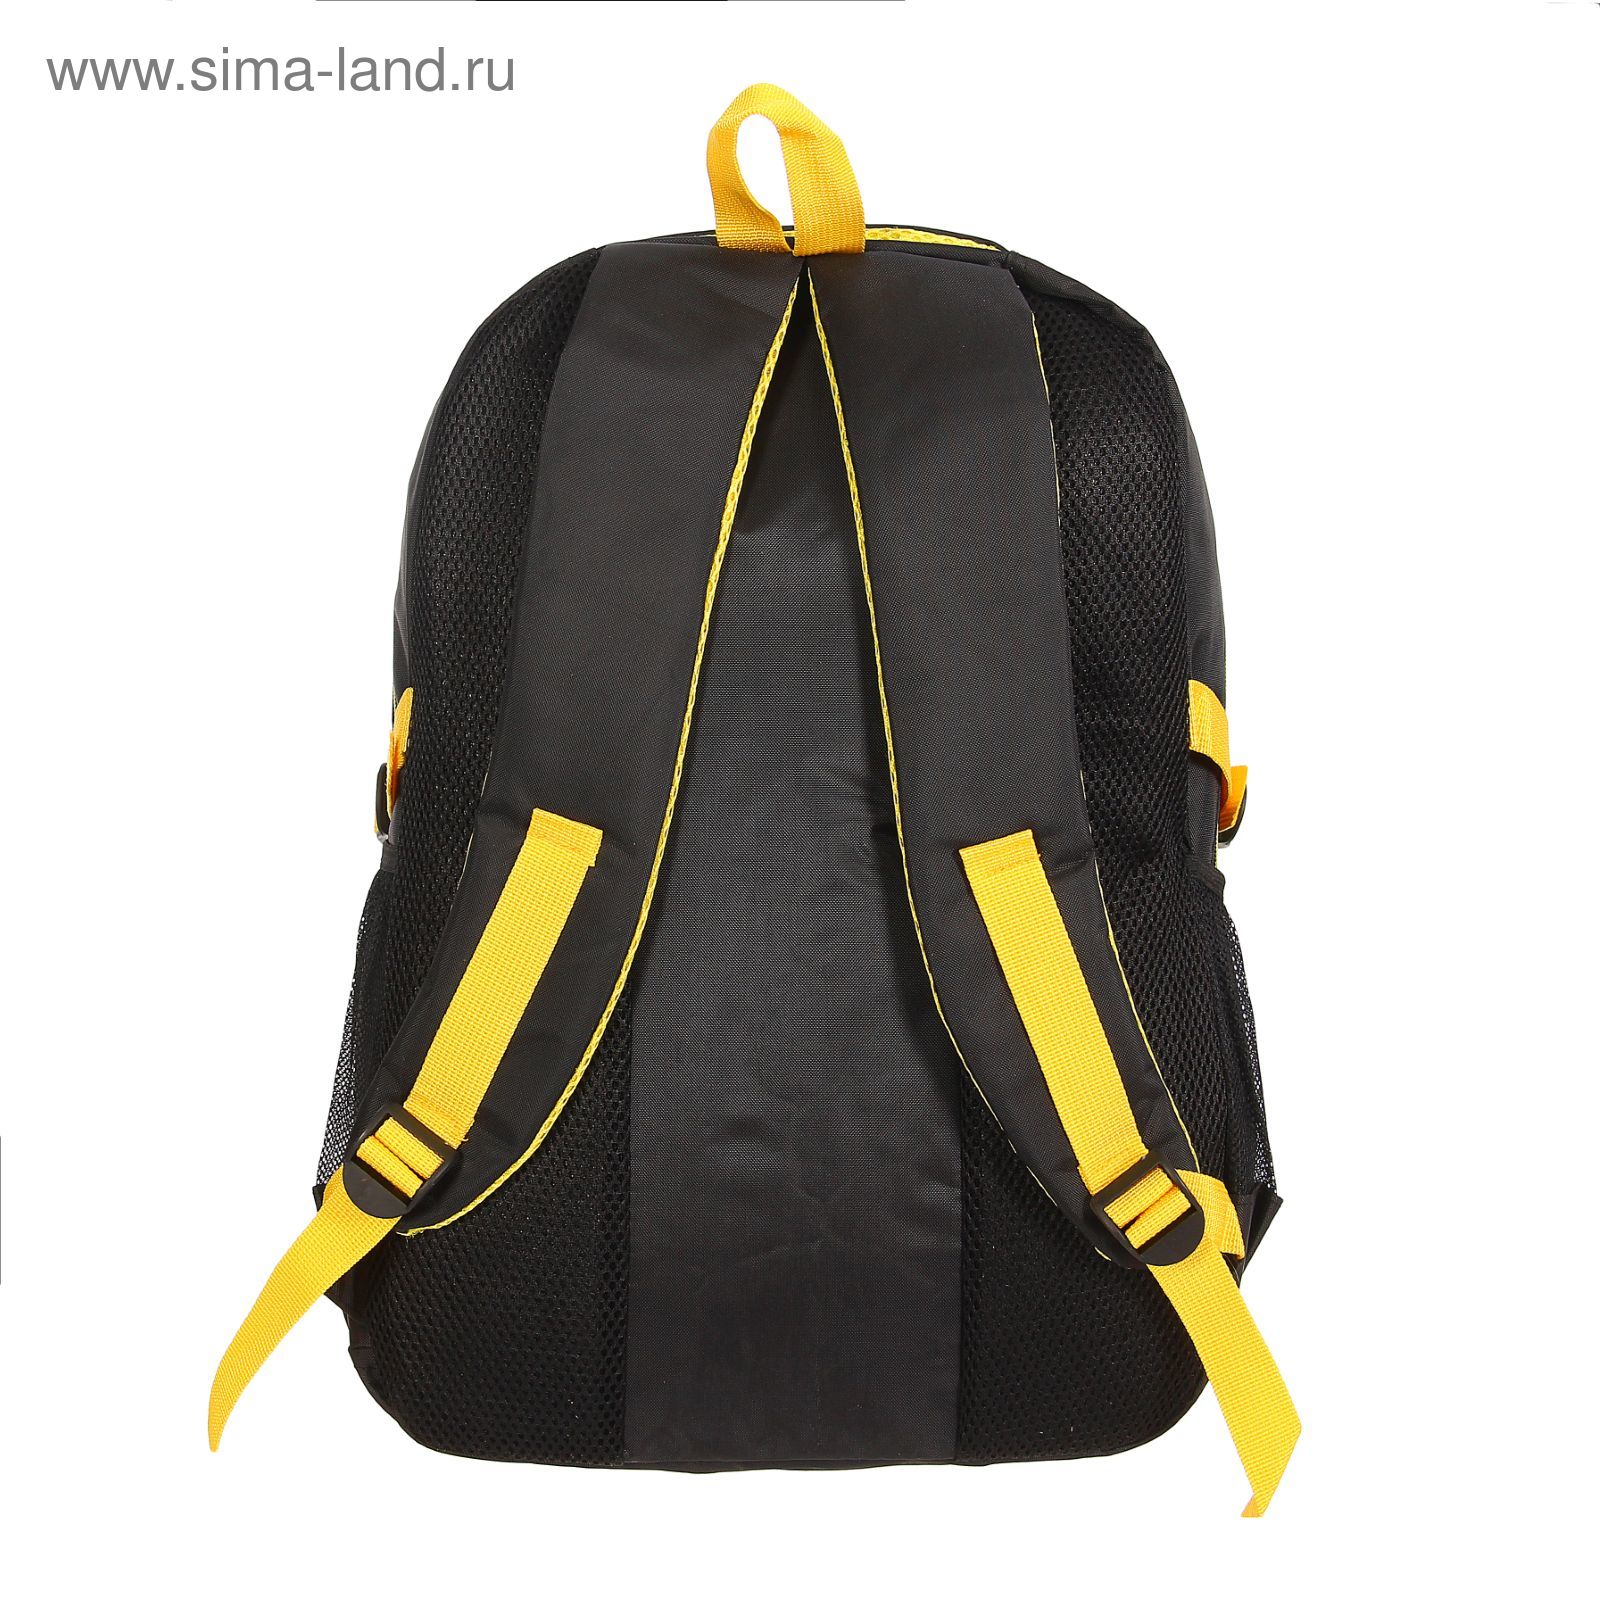 Рюкзак туристический, 3 отдела, 1 наружный и 2 боковых кармана, усиленная спинка, объём - 25л, чёрный/жёлтый